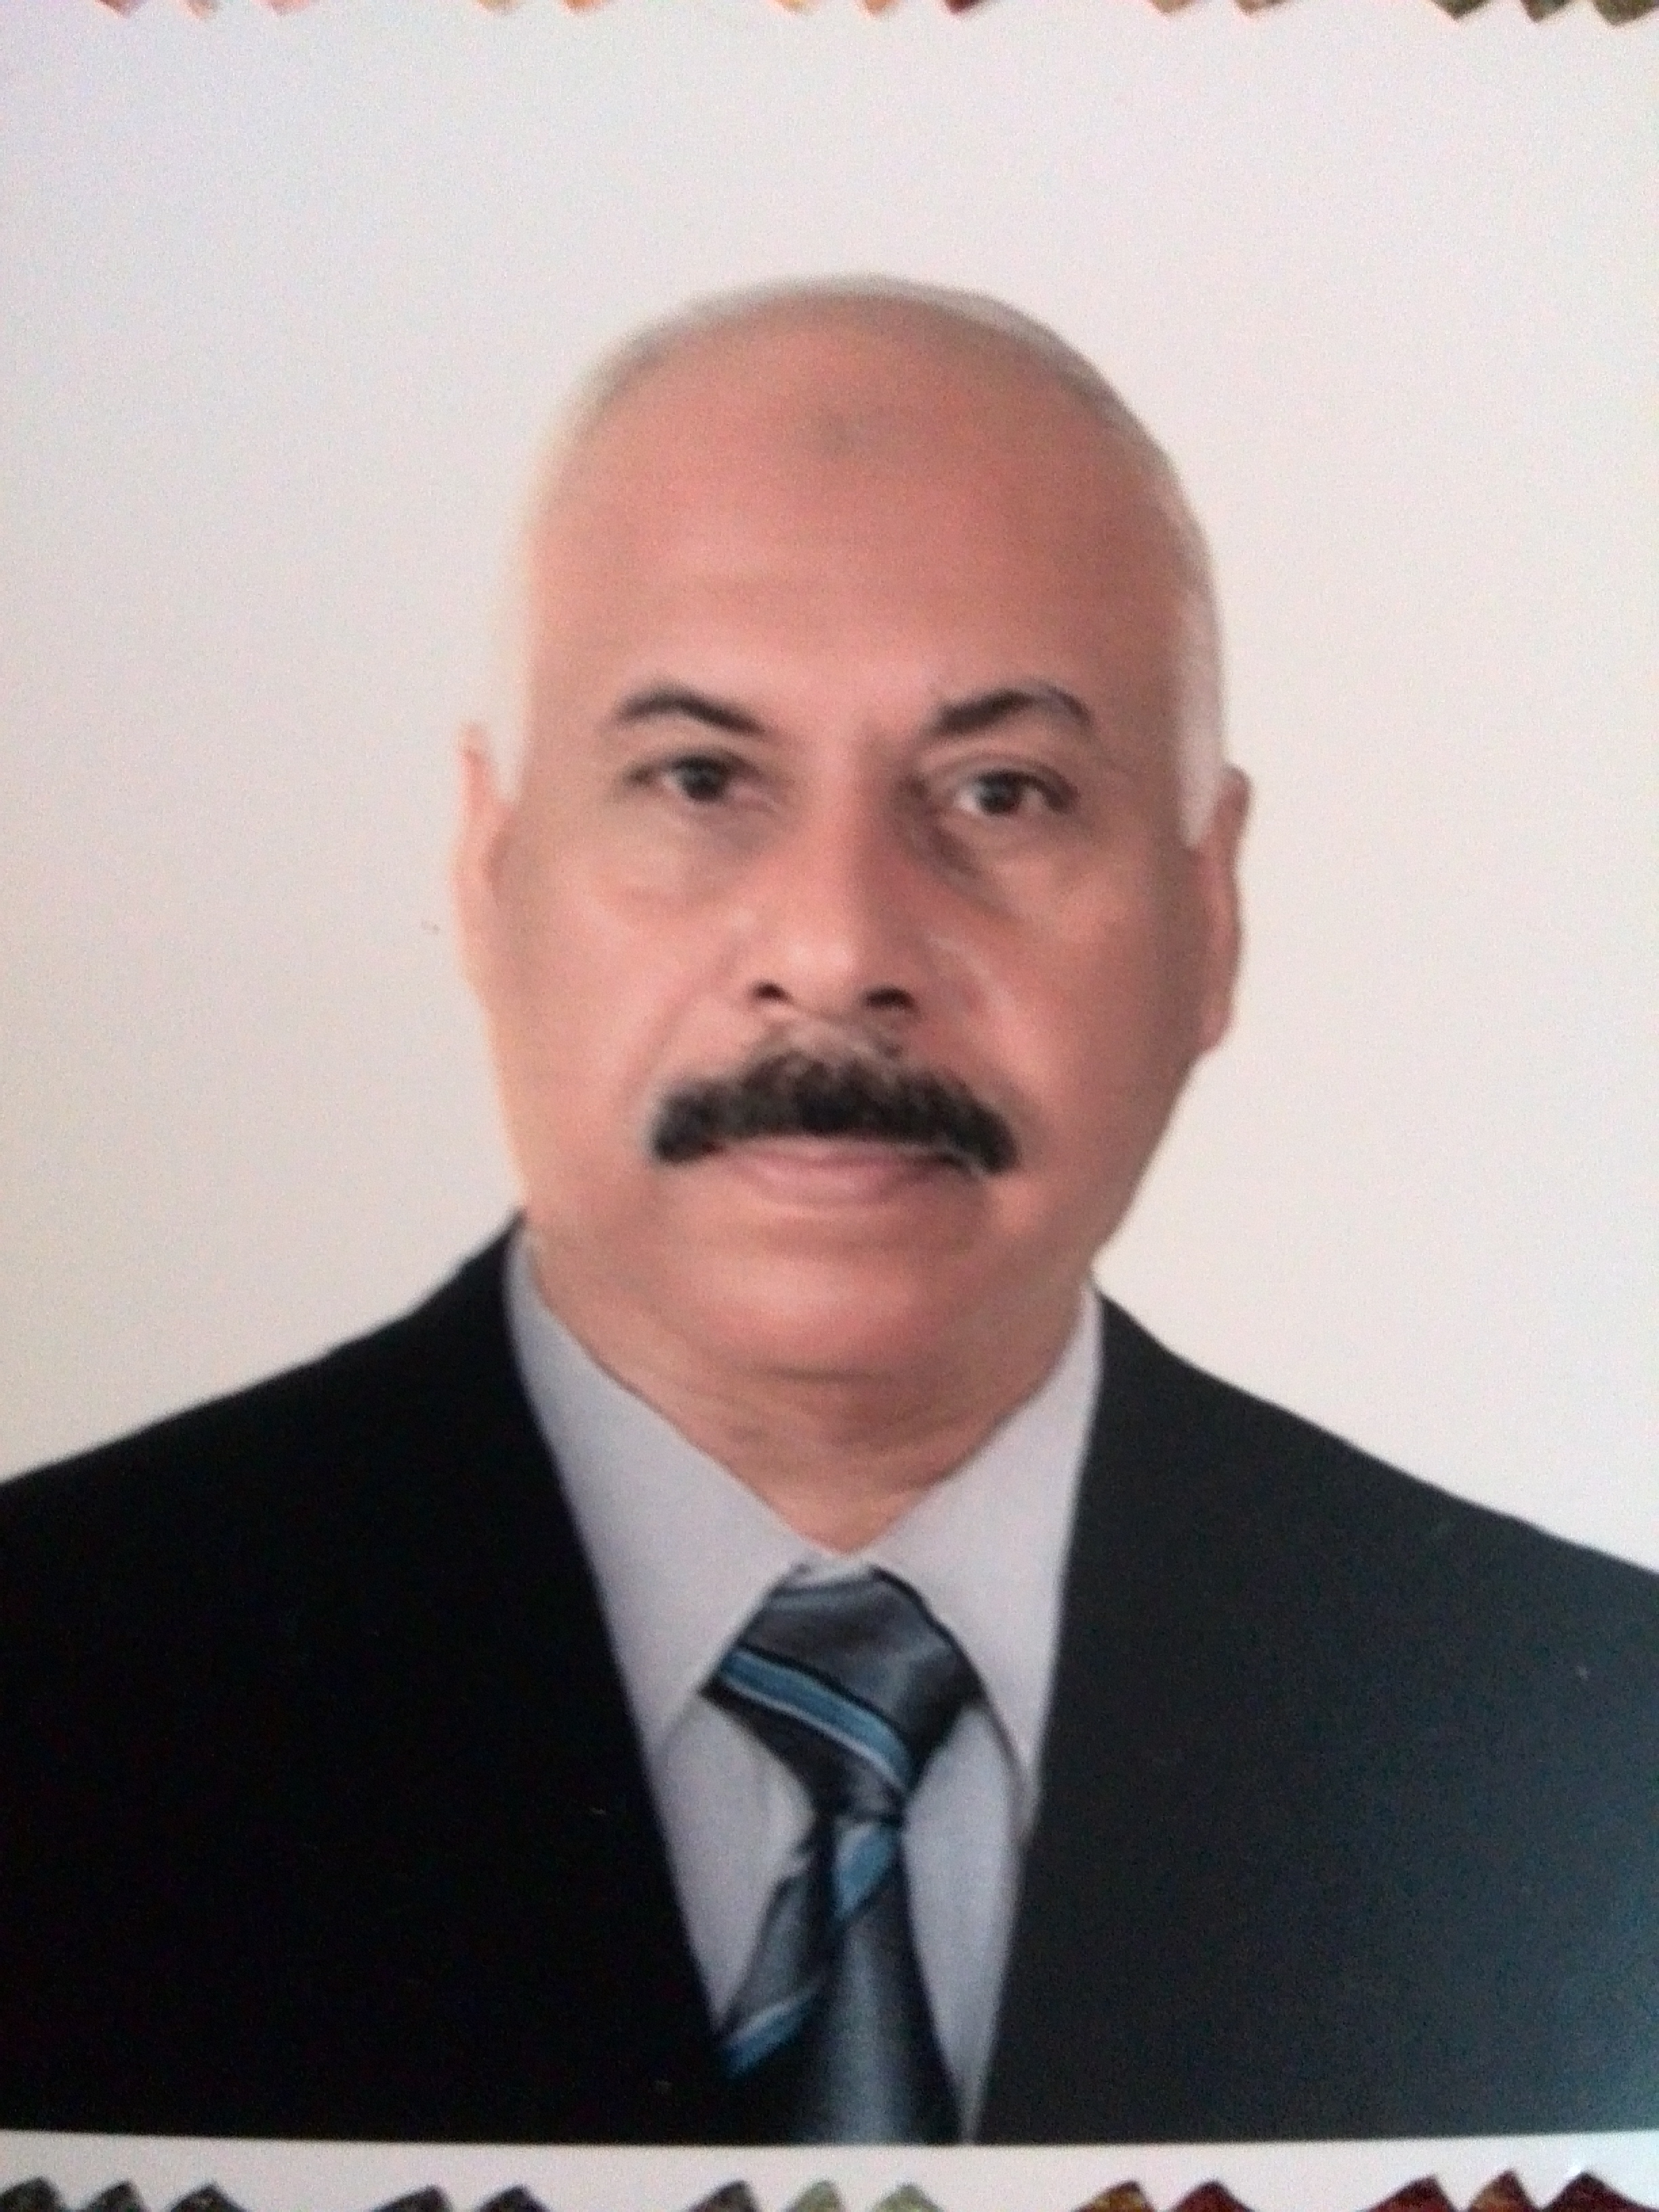 Sabah Abdul Ridha Aswaed